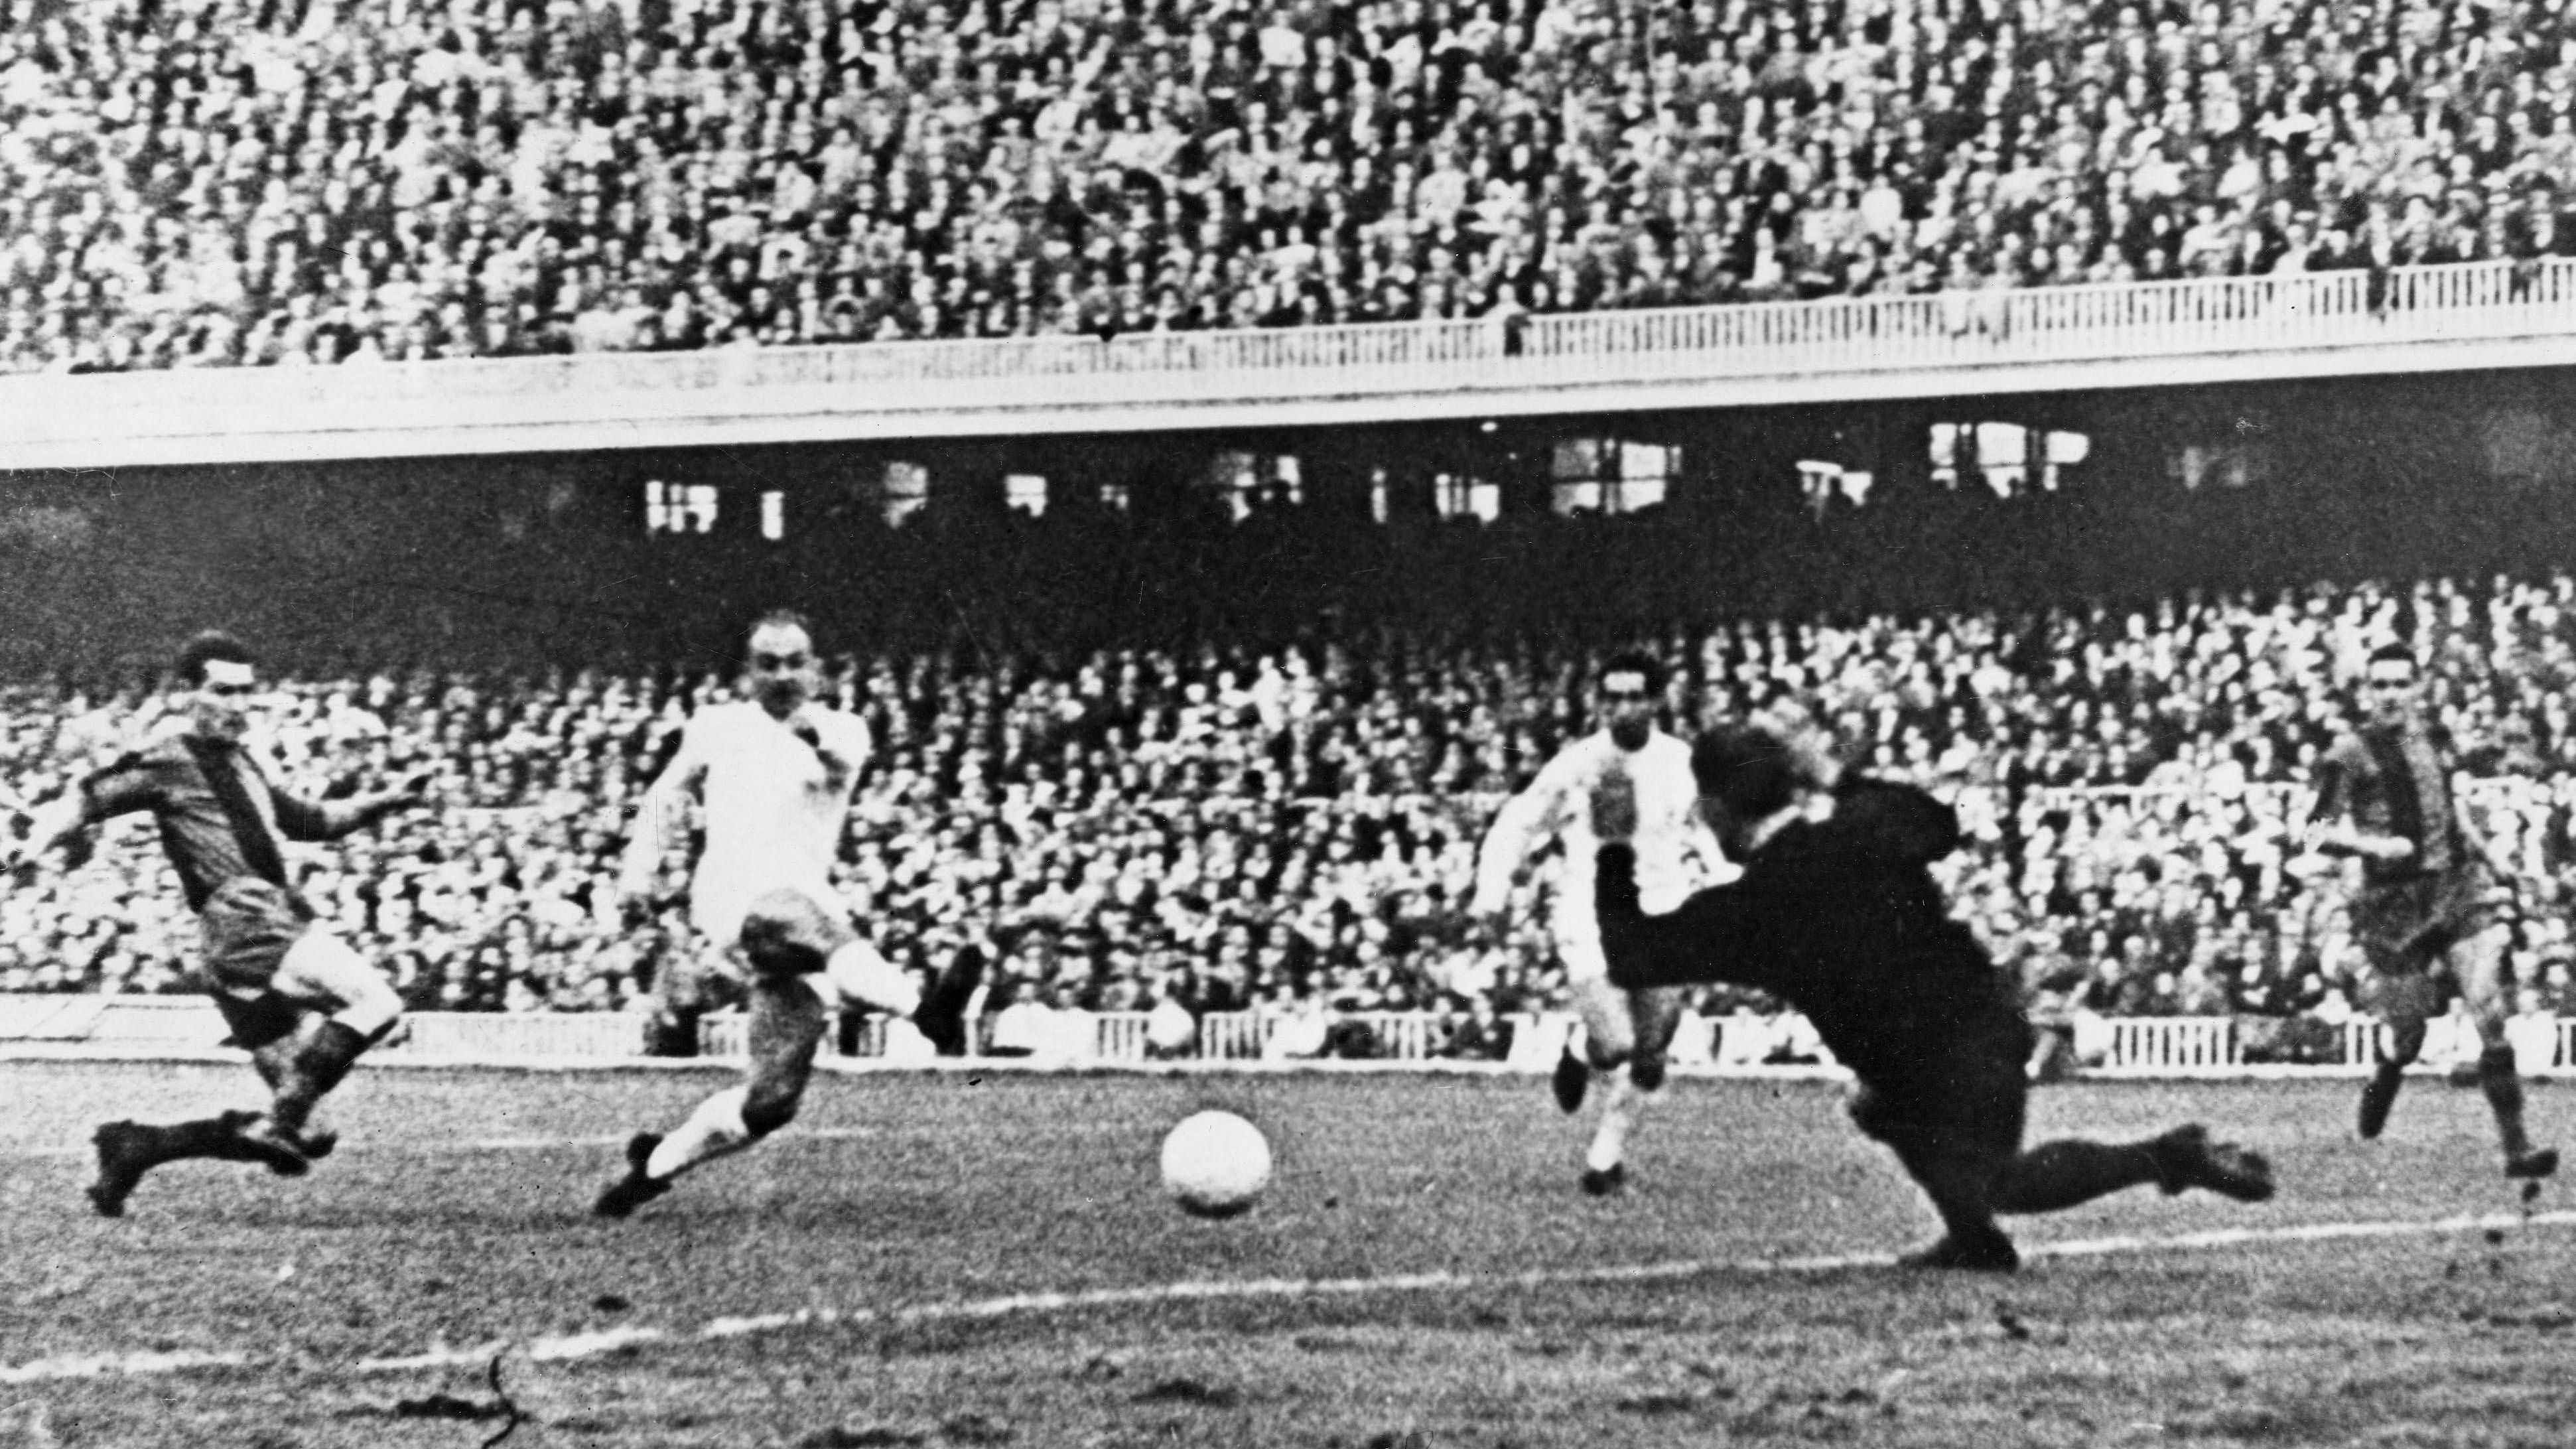 <strong>Die Vorgeschichte</strong><br>Bereits 1902 trafen Real und Barca aufeinander, spätestens nach Ende des spanischen Bürgerkriegs im Jahr 1939 entwickelte sich die Rivalität. Schon als Real Barca 1953 Alfredo Di Stefano wegschnappte, waren sich die Klubs spinnefeind. Bemerkenswert war das 11:1 von Real gegen Barca in der Copa del Rey 1943, bei dem ein Real-Verantwortlicher die Barca-Spieler eingeschüchtert haben soll.